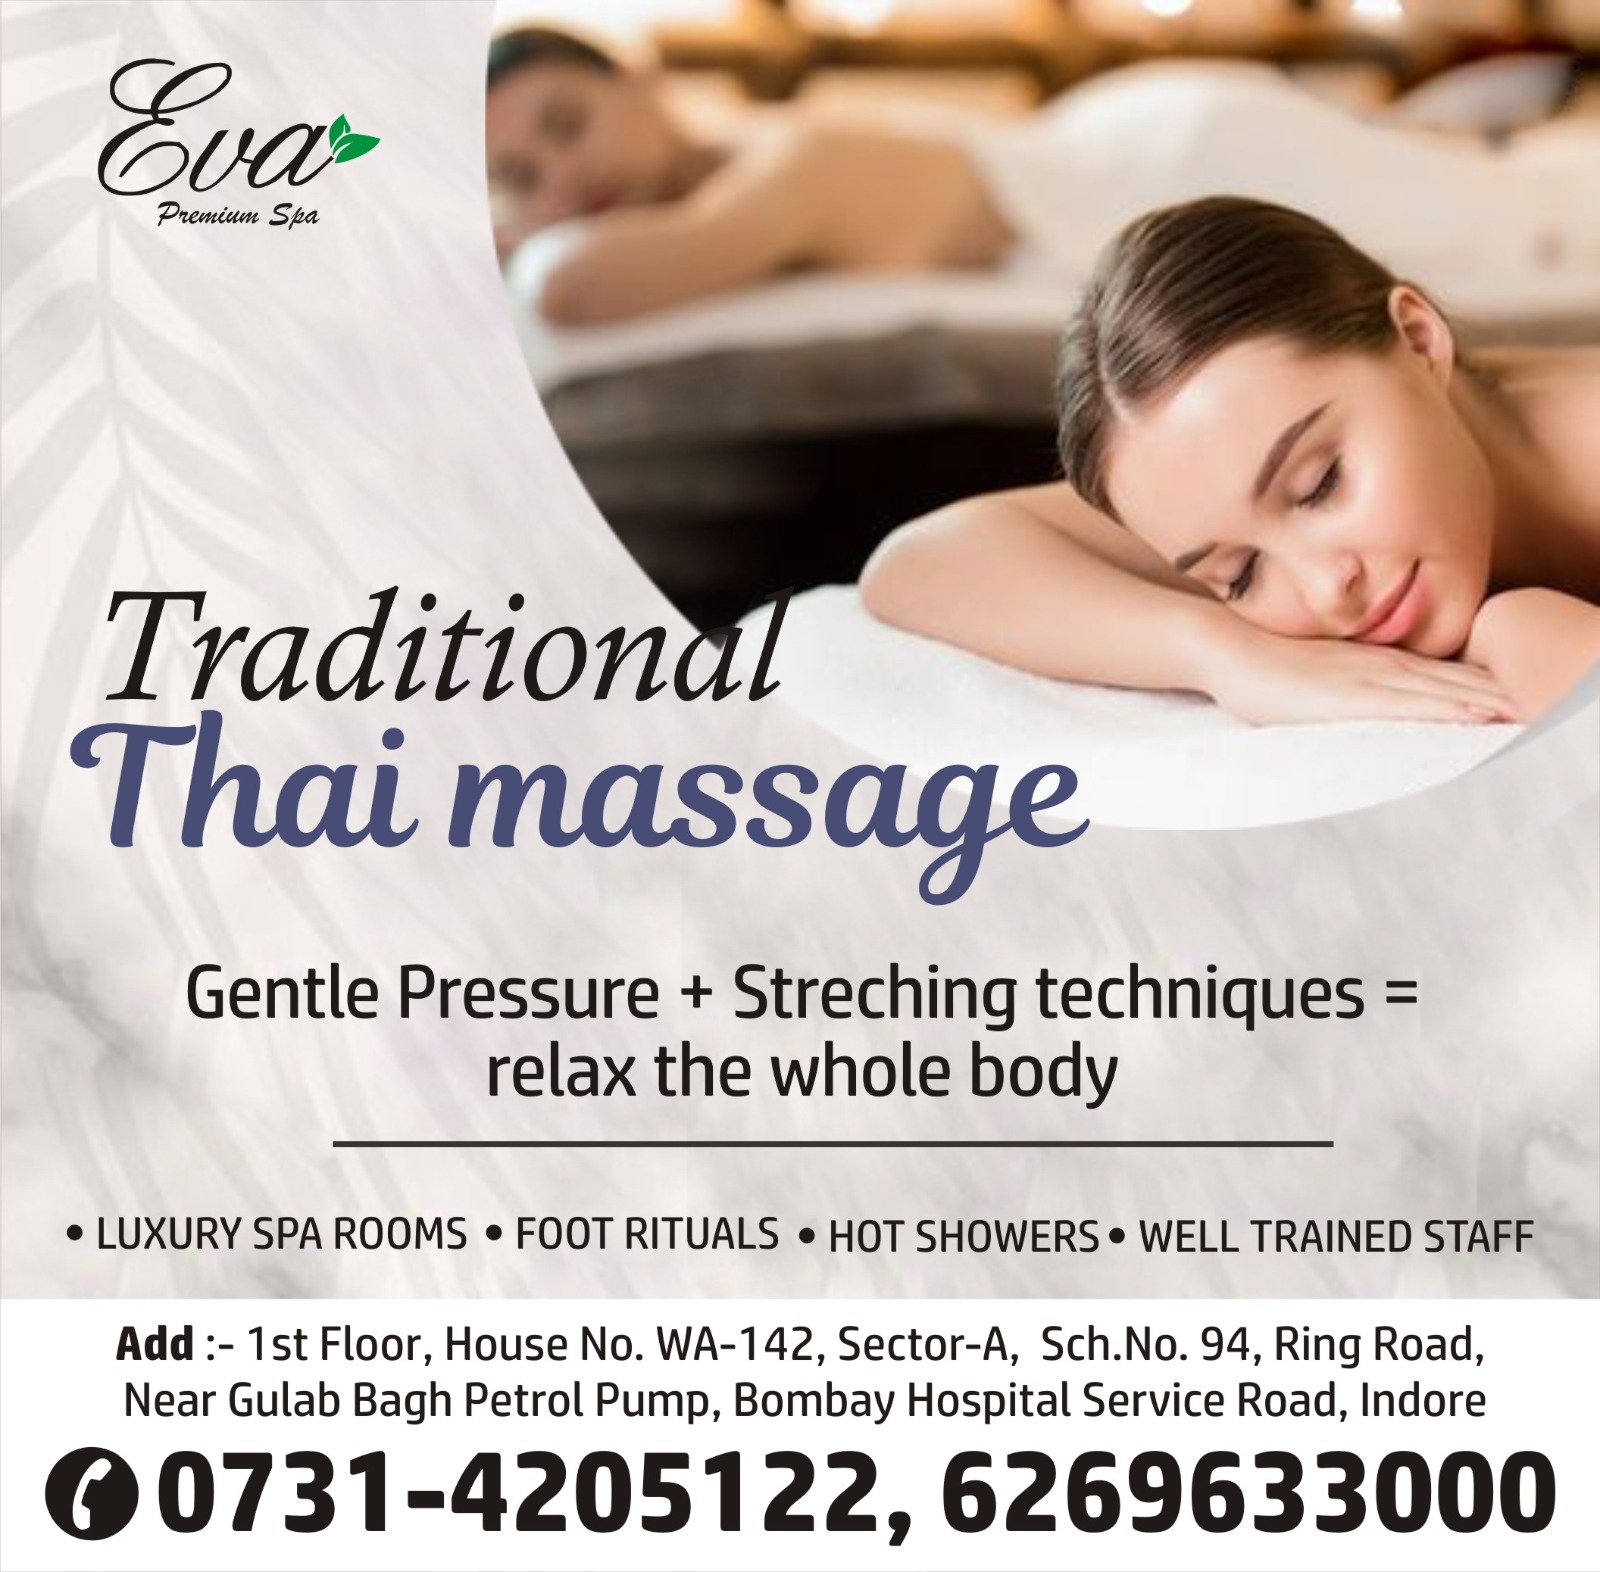 Best Thai Massage Services in Indore